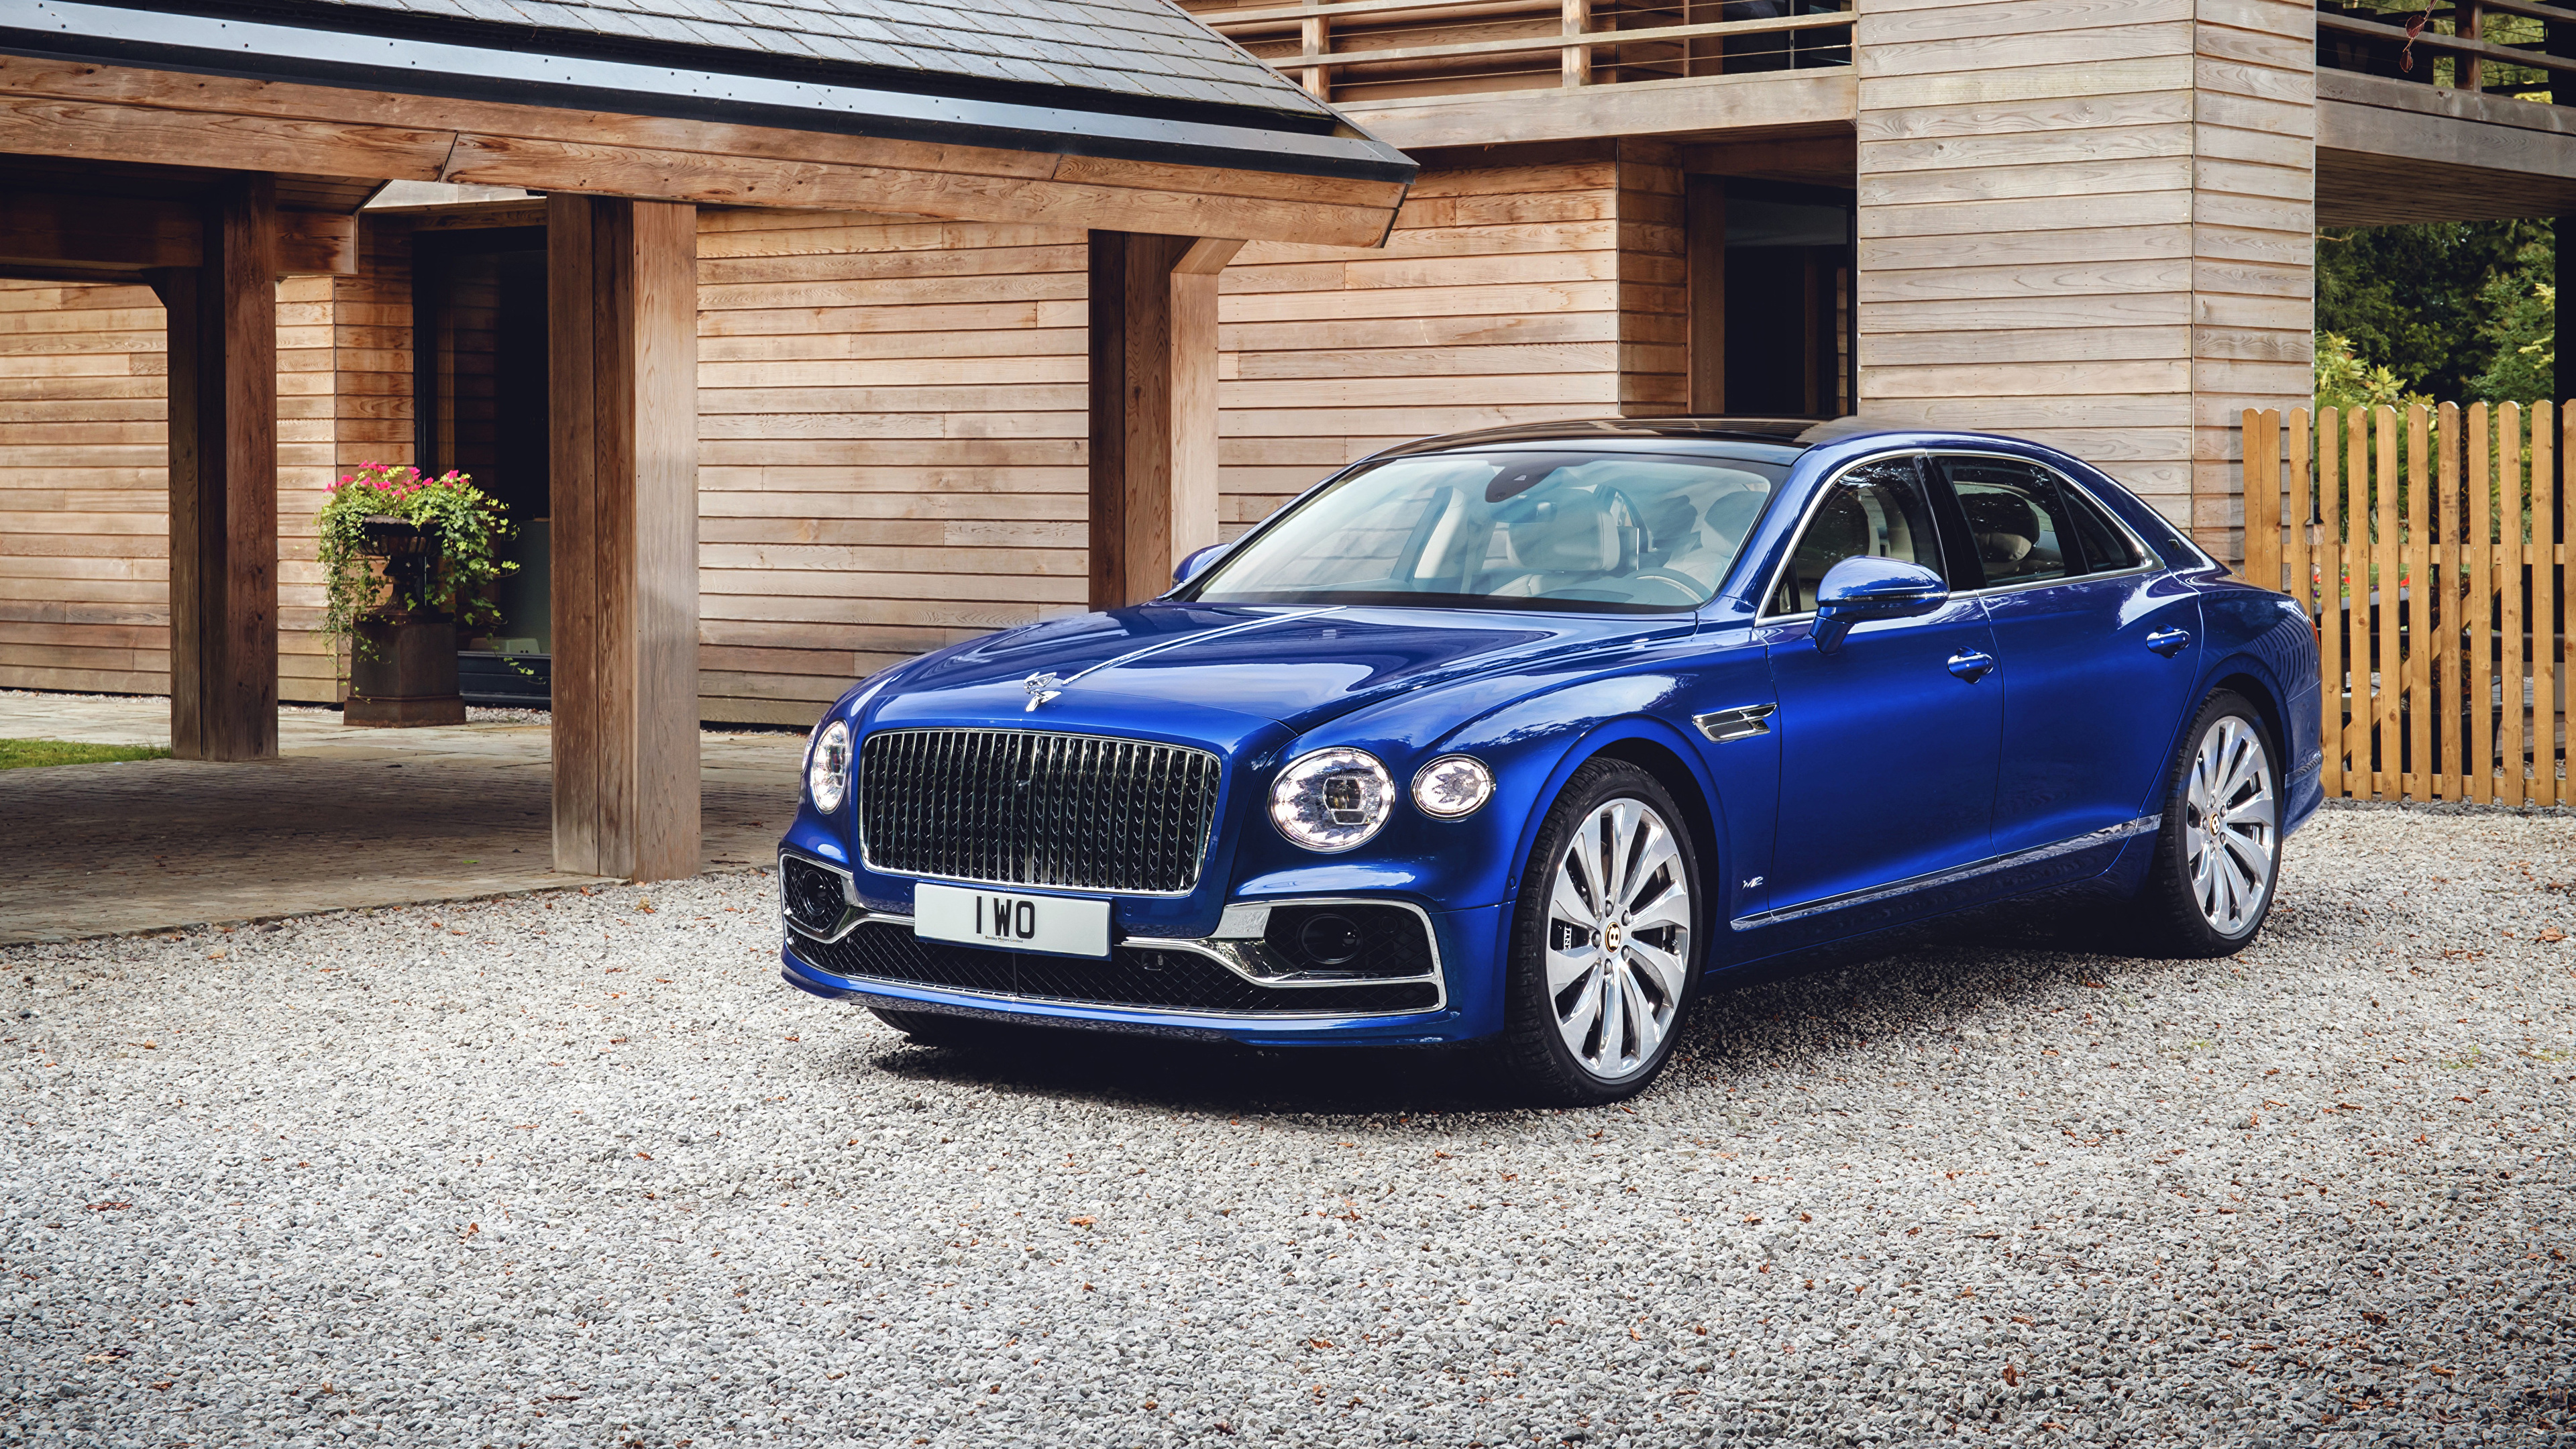 Обои для рабочего стола Бентли 2019-20 Flying Spur First Edition Worldwide Синий машина Металлик 3840x2160 Bentley синяя синие синих авто машины Автомобили автомобиль